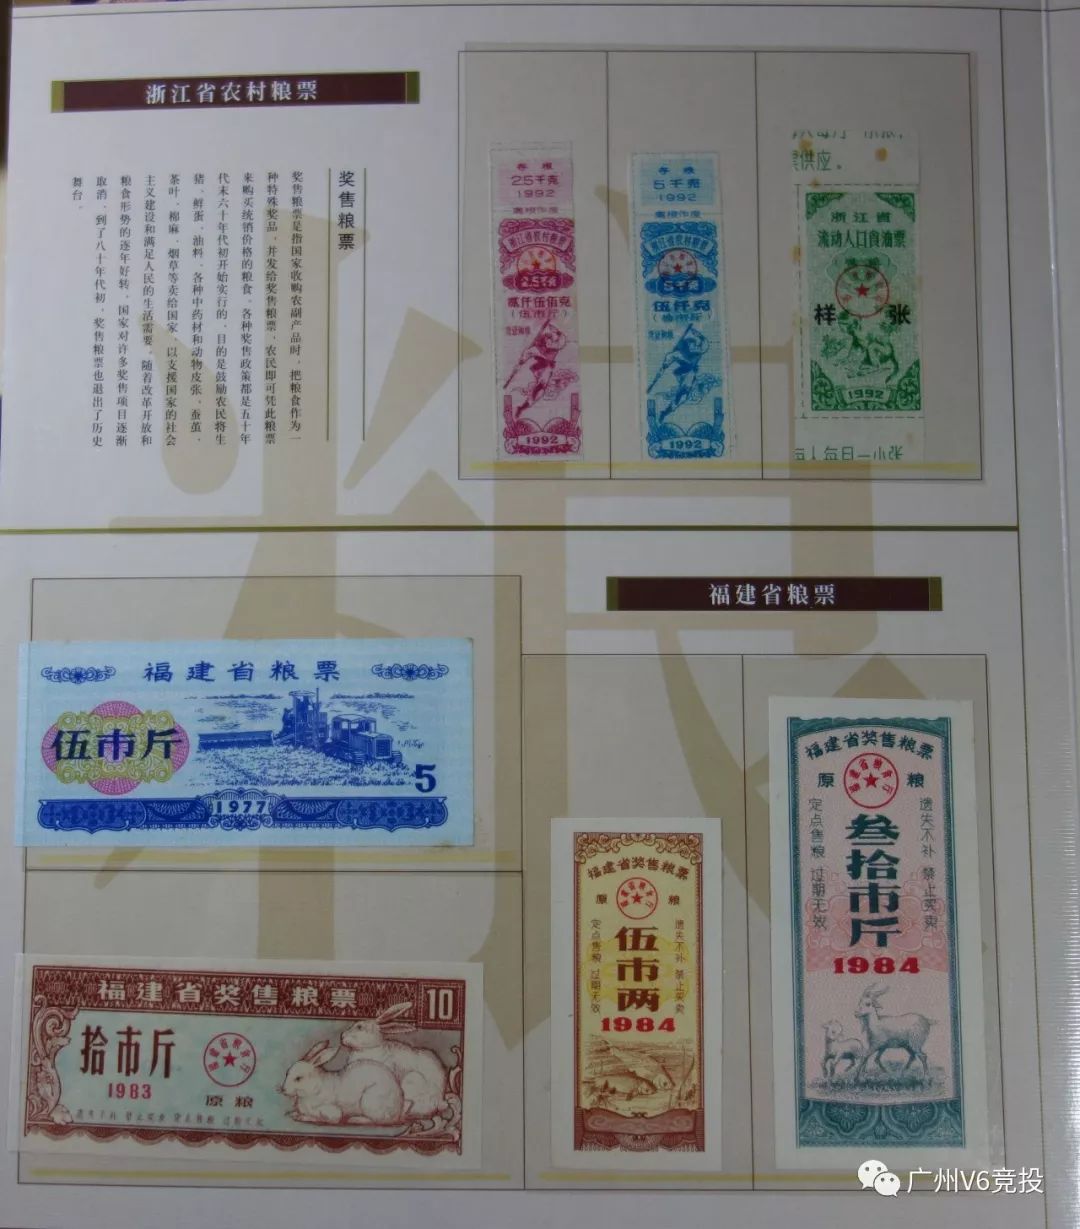 广州v6 第673期 11 10 周六13 00 拍品预展 人民币